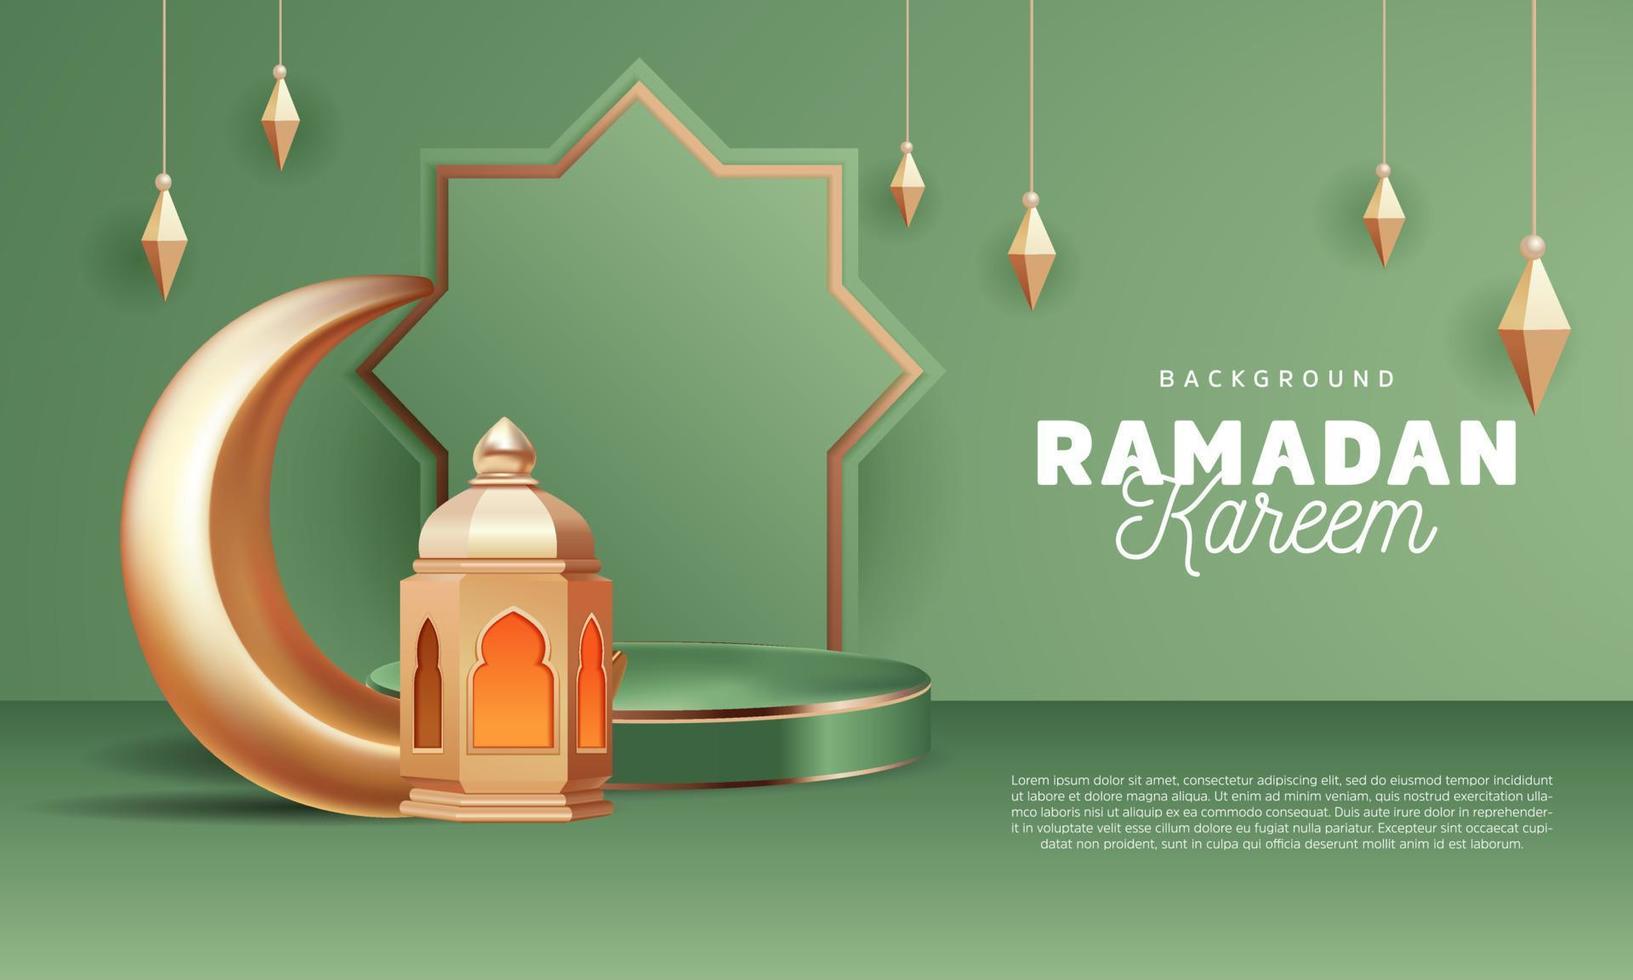 Ramadan kareem ontwerp achtergrond podium stadium groen goud met halve maan maan en lantaarn landschap vector illustratie